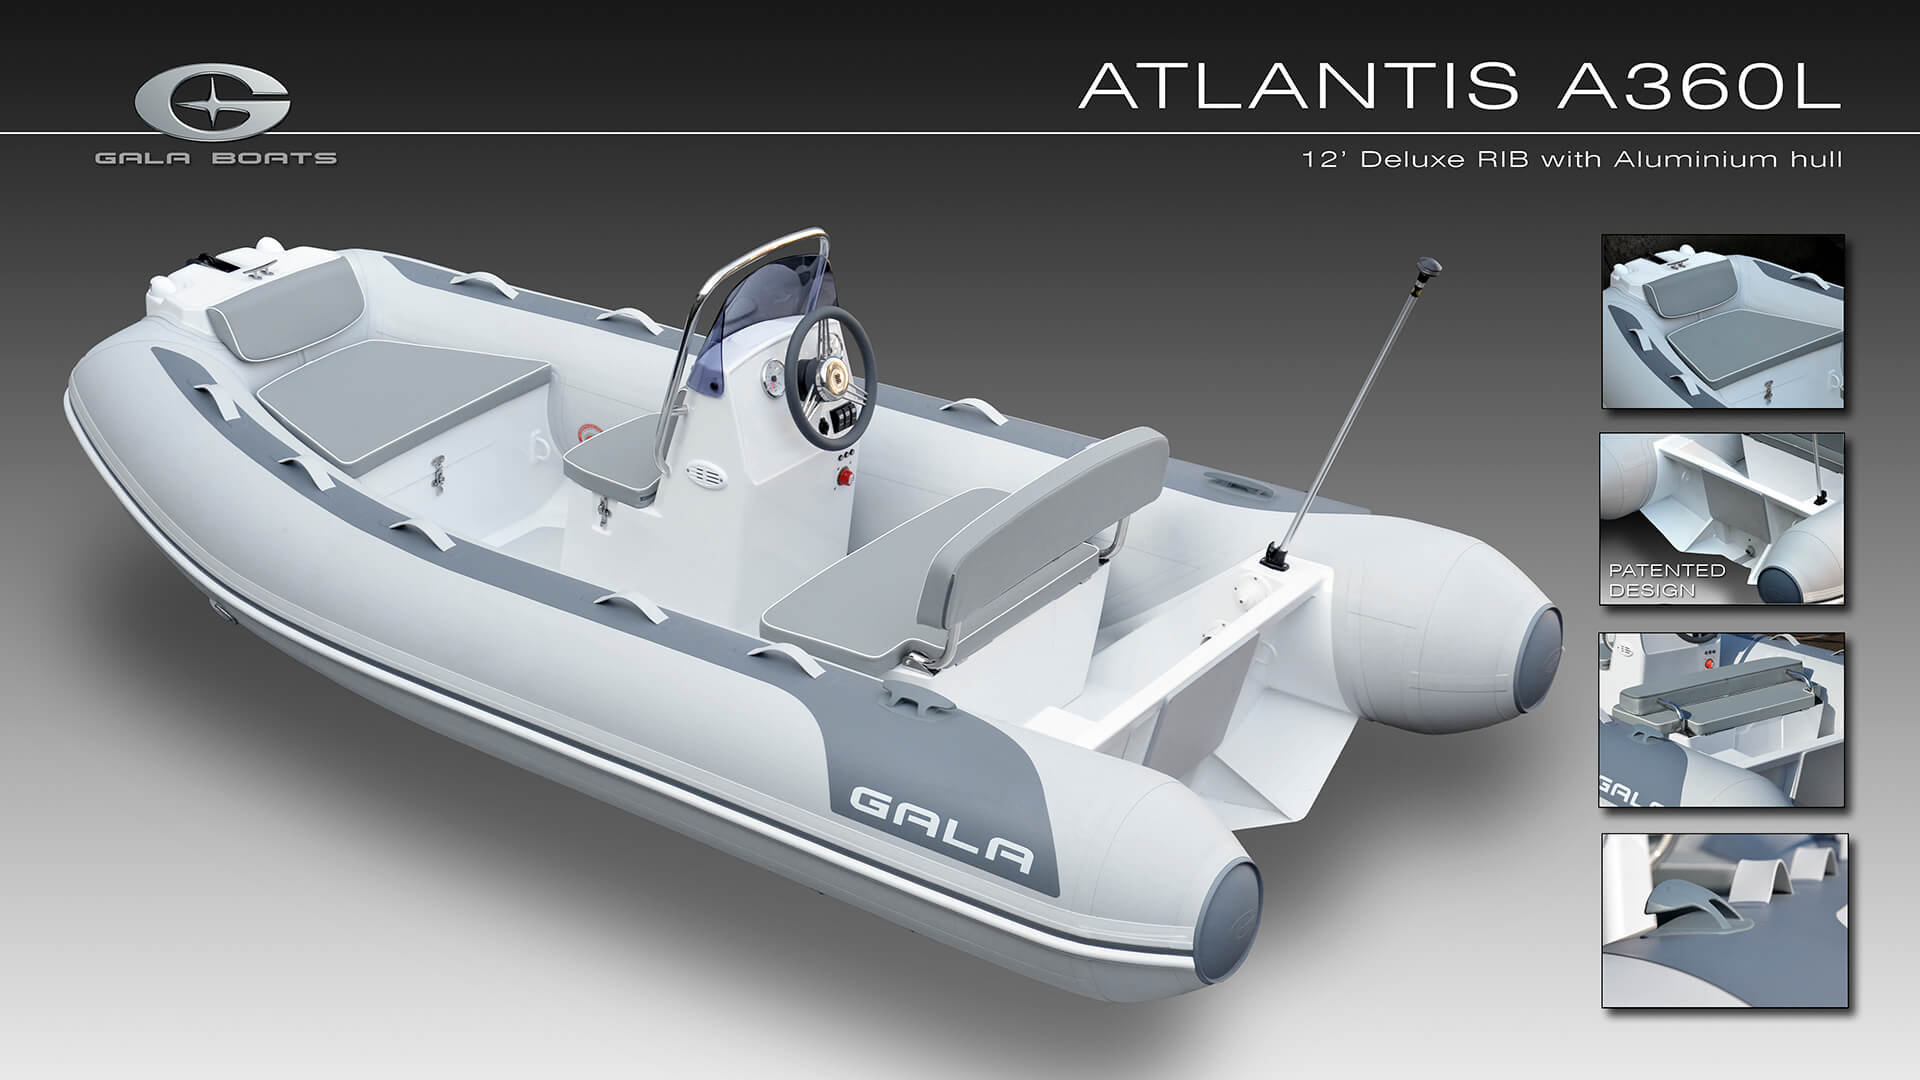 Надувная лодка с жестким алюминиевым дном GALA Atlantis A360L, Надувная лодка с жестким дном GALA Atlantis A360L, Надувная лодка с жестким дном GALA A360L, Надувная лодка GALA A360L, Надувная лодка GALA A360L, GALA A360L, лодка с жестким дном, алюминиевый риб, алюминиевый RIB, RIB, тендерная лодка, тендер для яхты